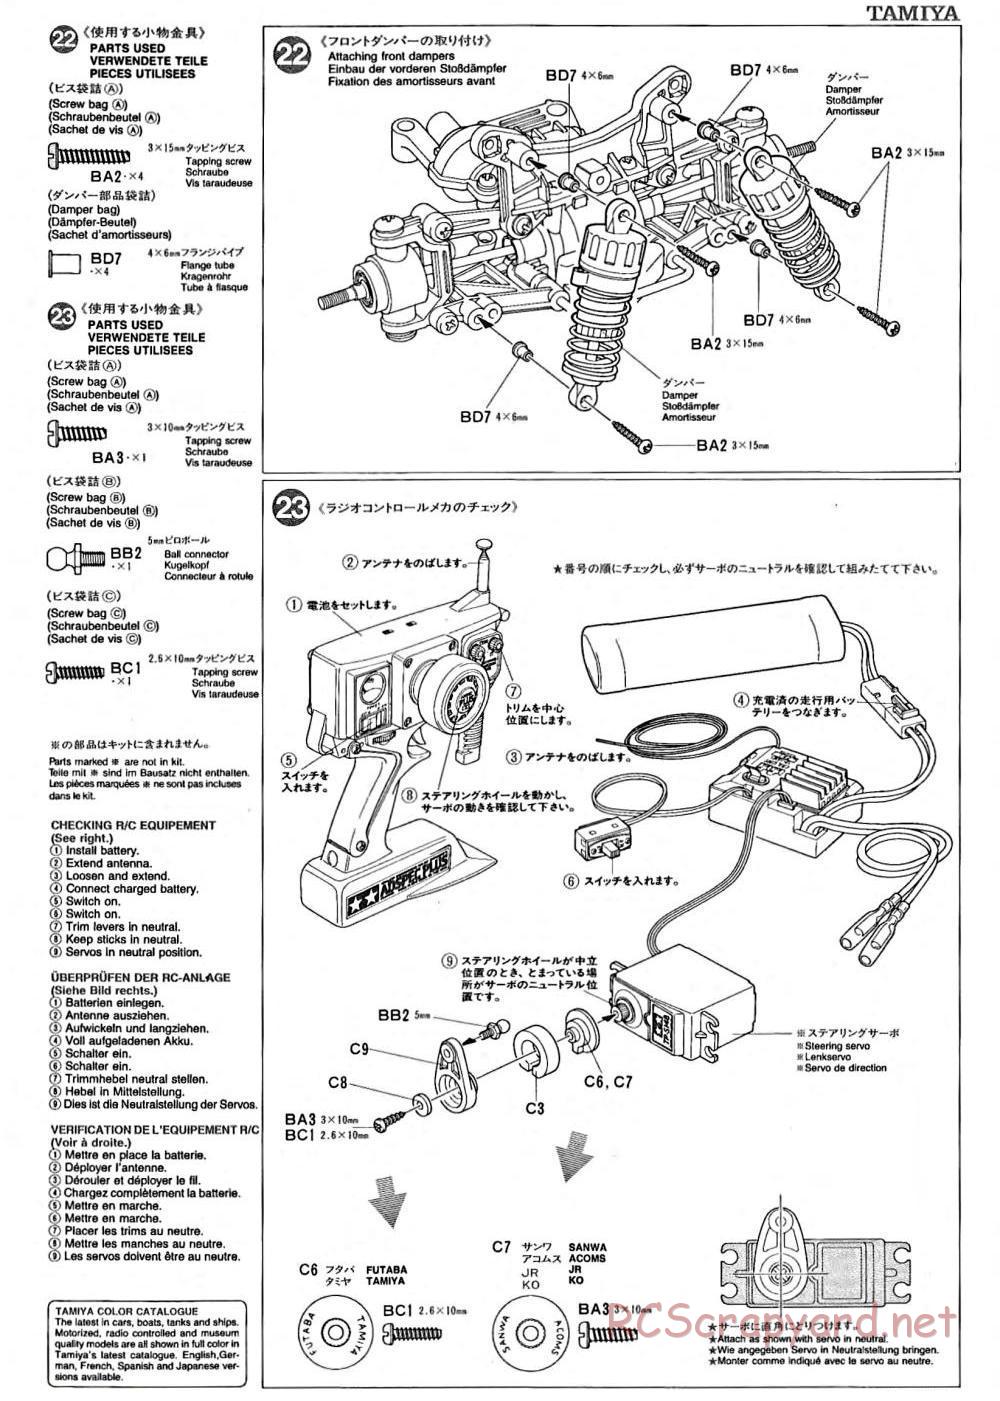 Tamiya - TA-02 Chassis - Manual - Page 8